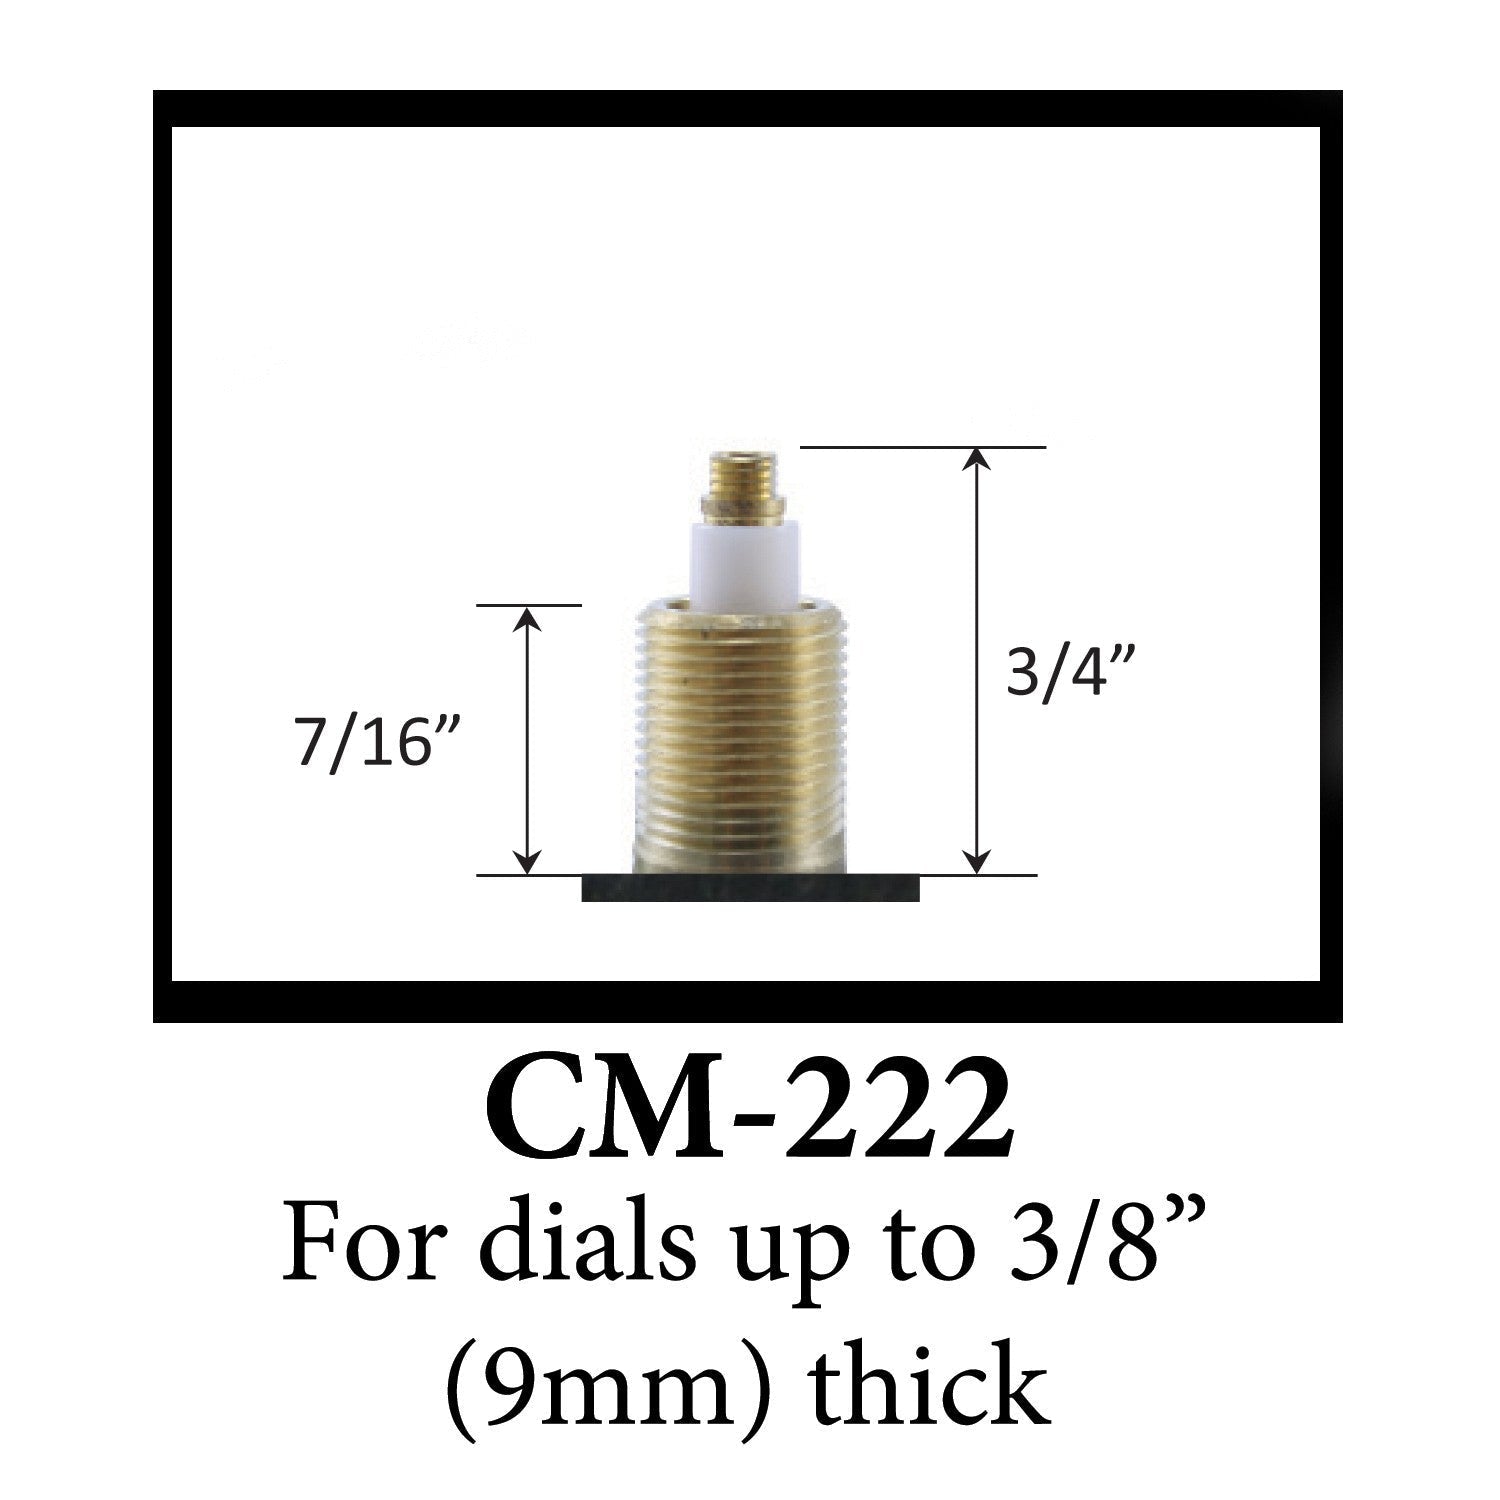 USA Made Standard C-Battery Size Pendulum Movement